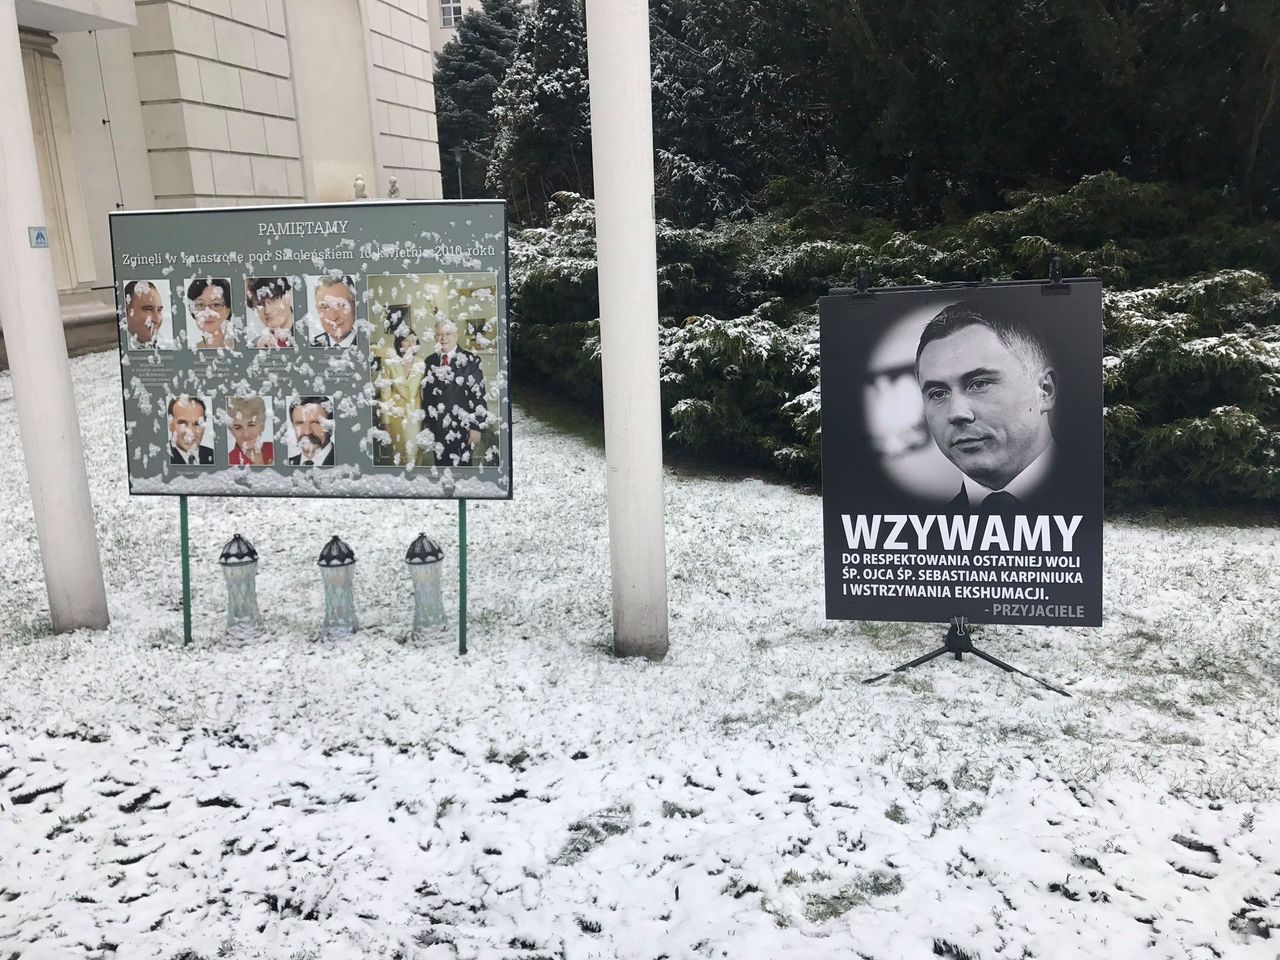 Straż Marszałkowska usunęła tablicę o ekshumacji. Sejm komentuje decyzję